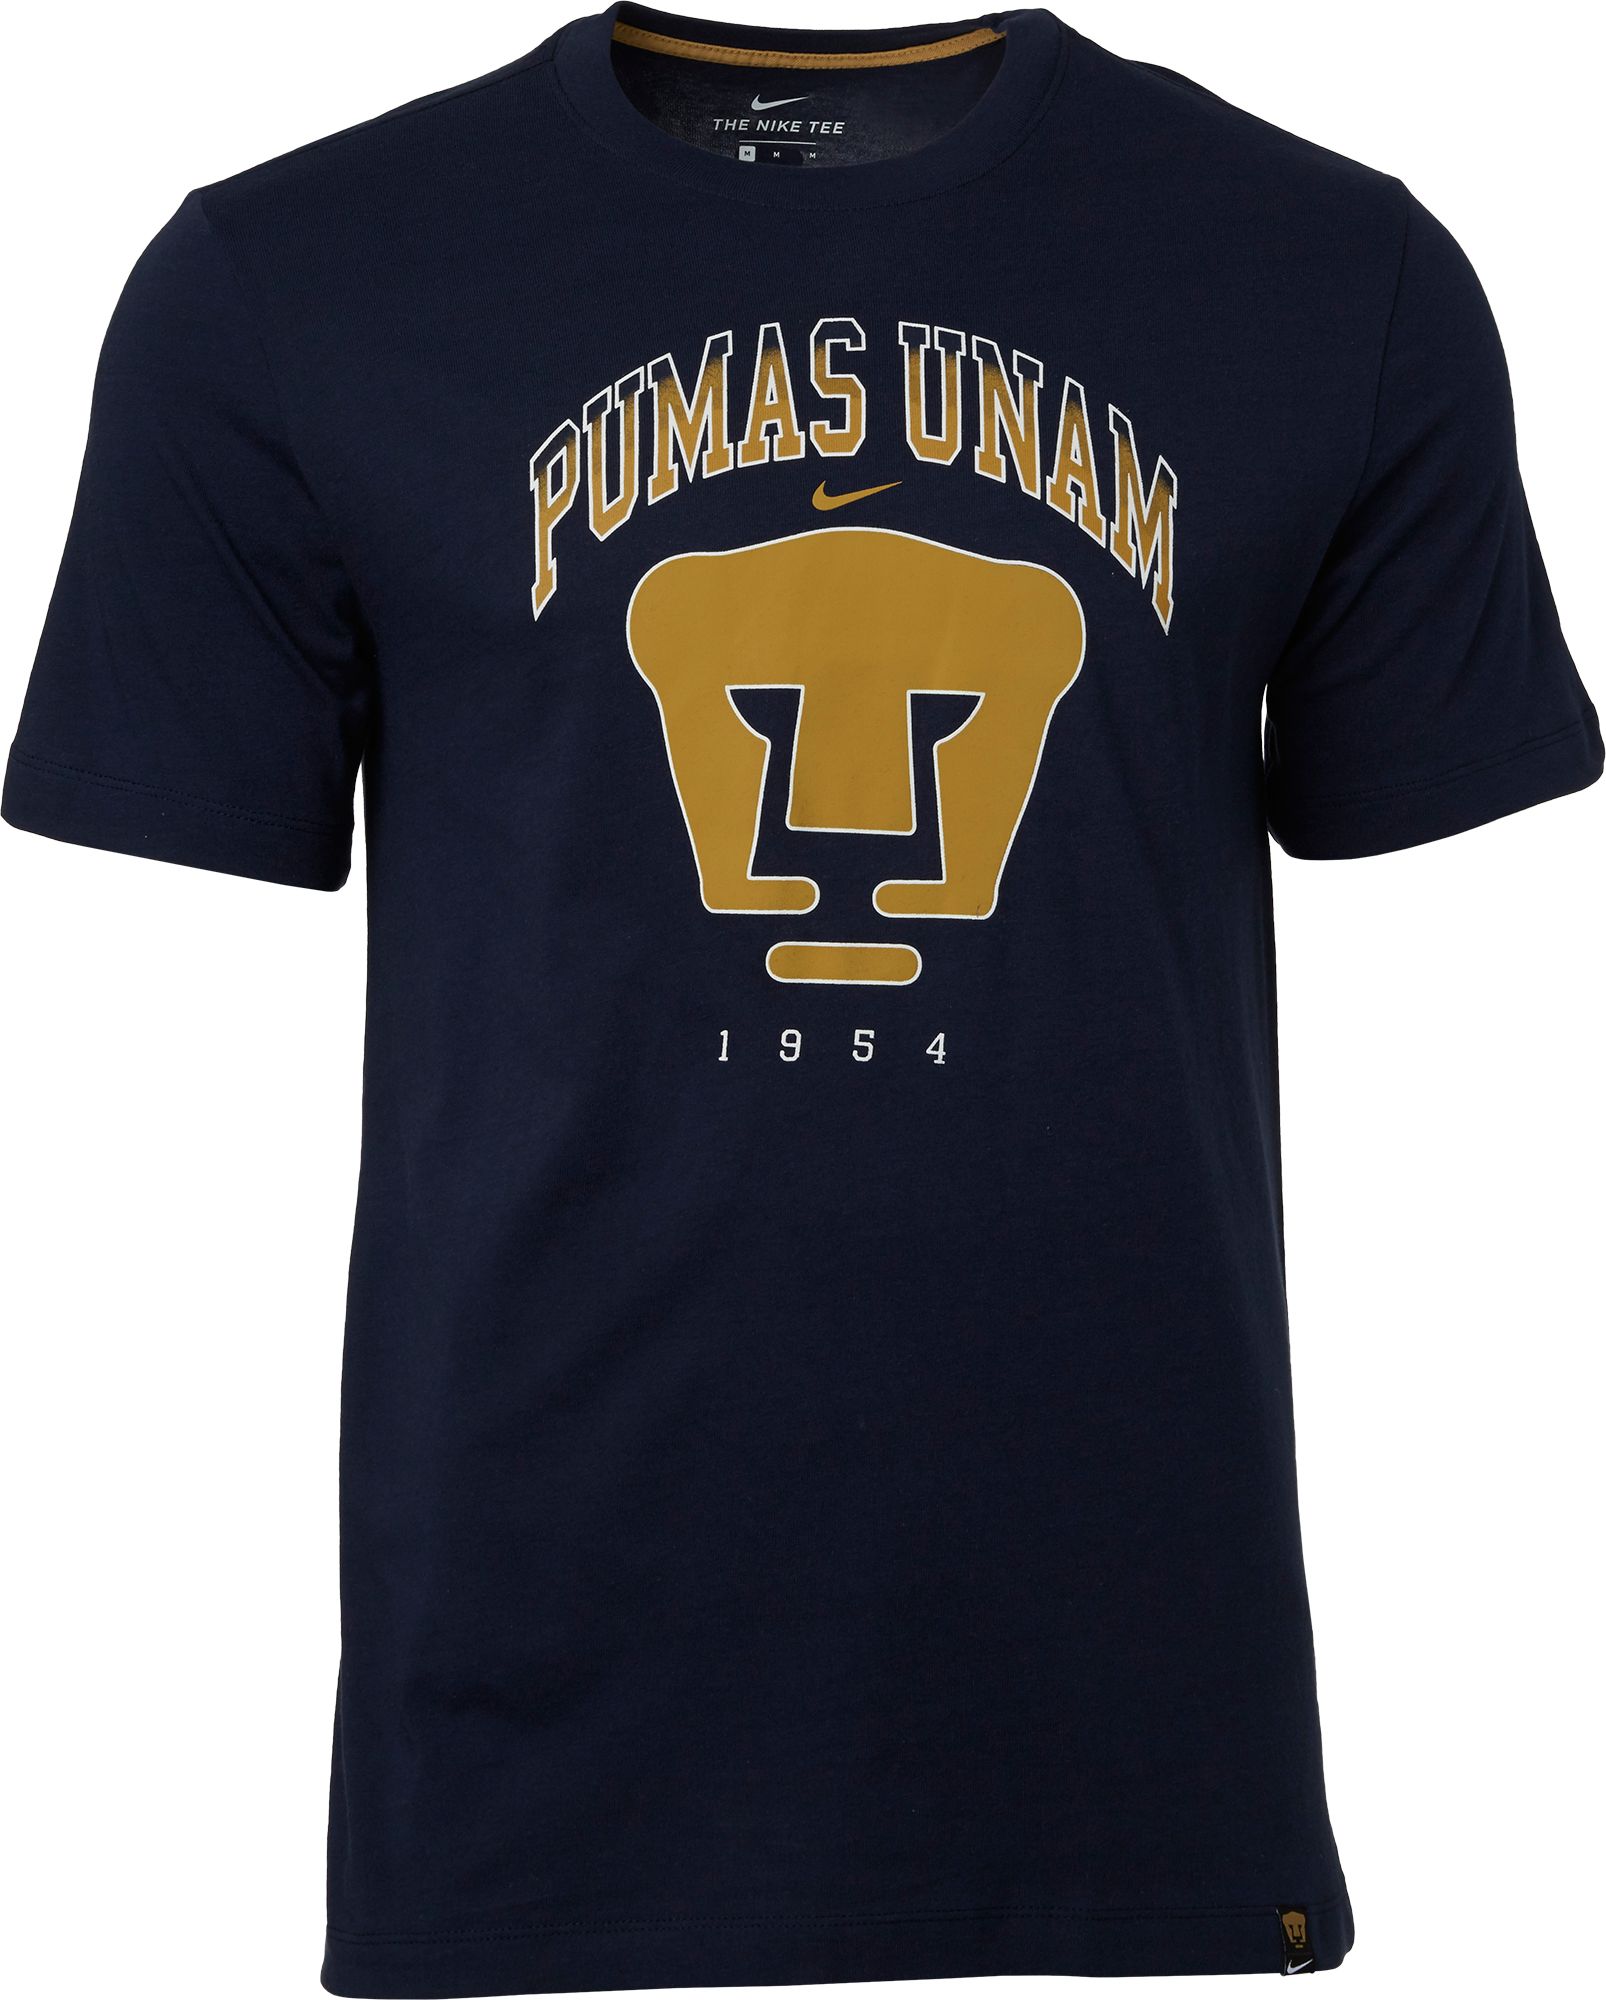 Pumas UNAM Story Telling Navy T-Shirt 